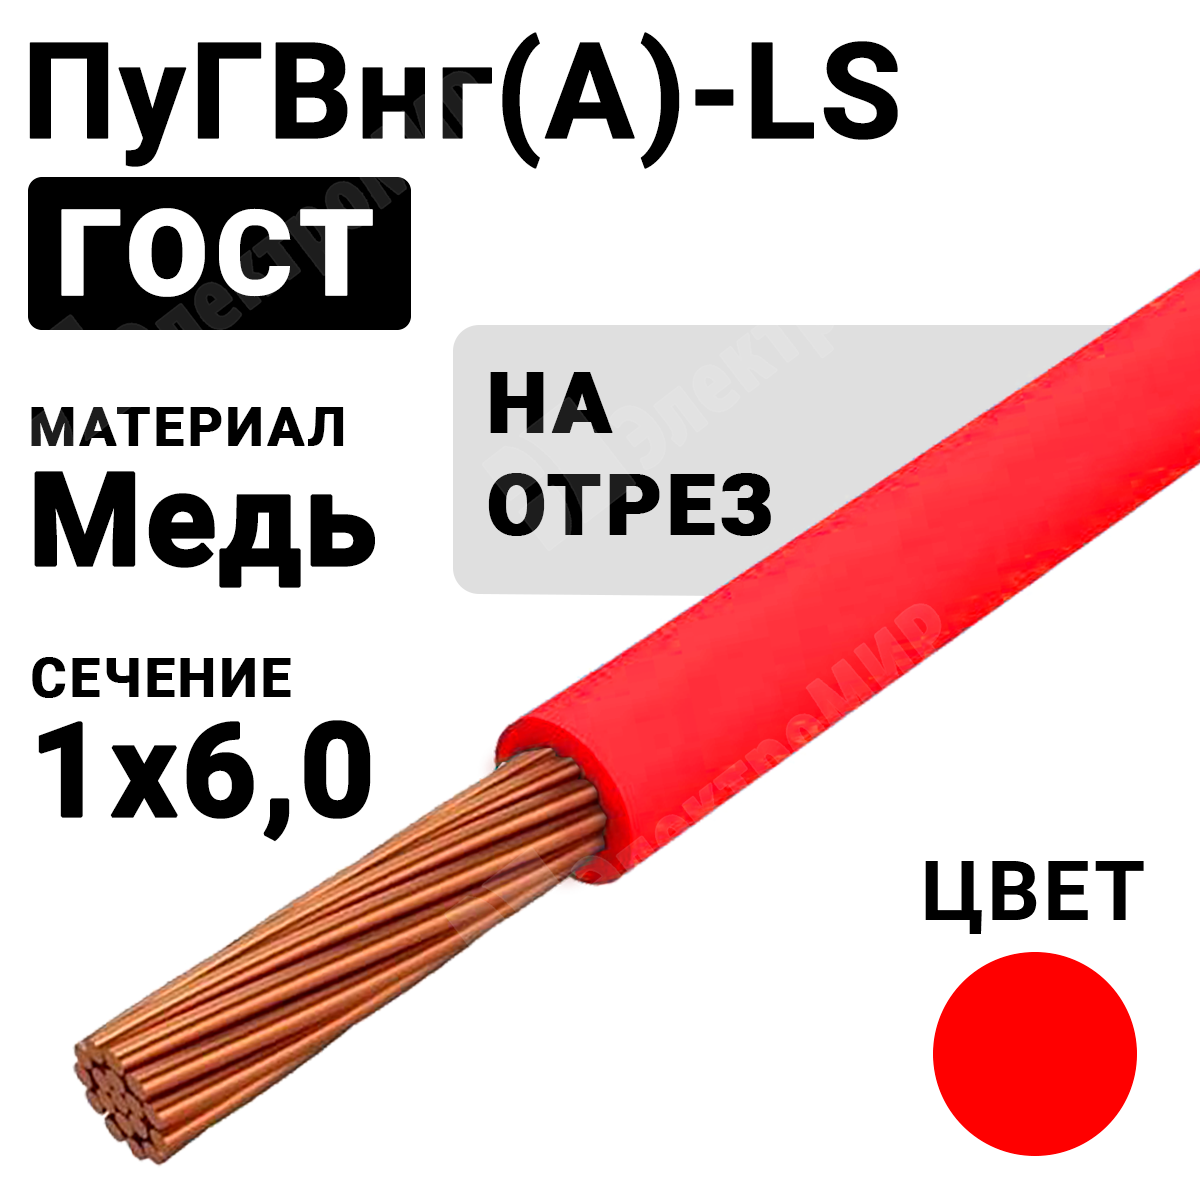 Гост красного цвета. ПУГВНГ(А)-LS 1х6 провод. Провод ПУГВНГ(А)-LS 1х2,5. Пуг ВГ НГ. Провод ПУВ 1х2.5 б 450/750в (бухта) (м) ПРОМЭЛ 11854610.